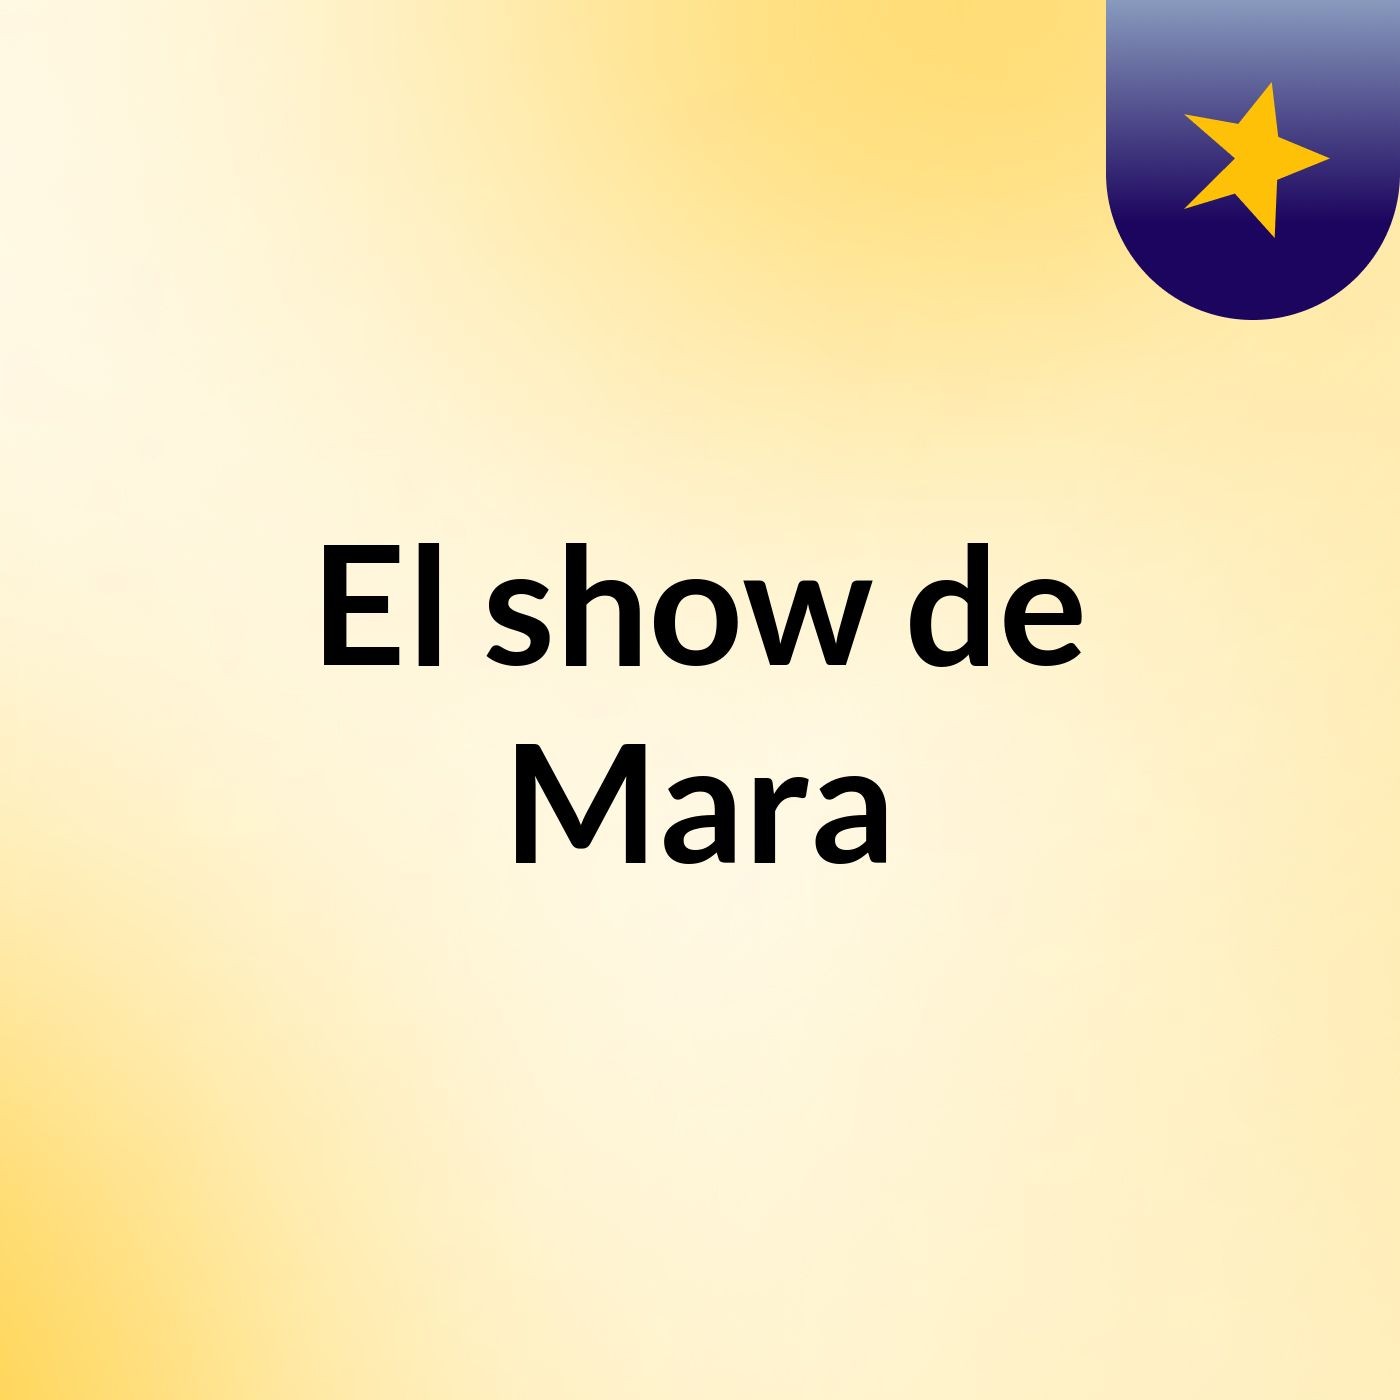 El show de Mara